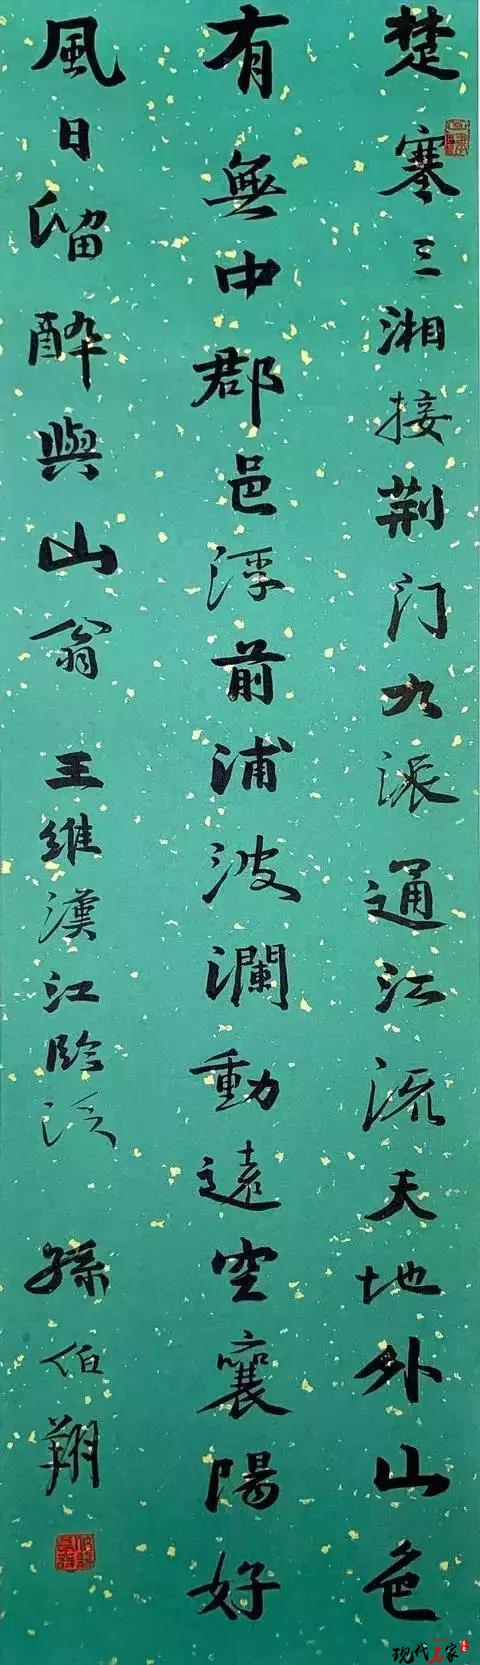 我对汉字的热爱，对书法的发掘是无止境的——孙伯翔-第3张